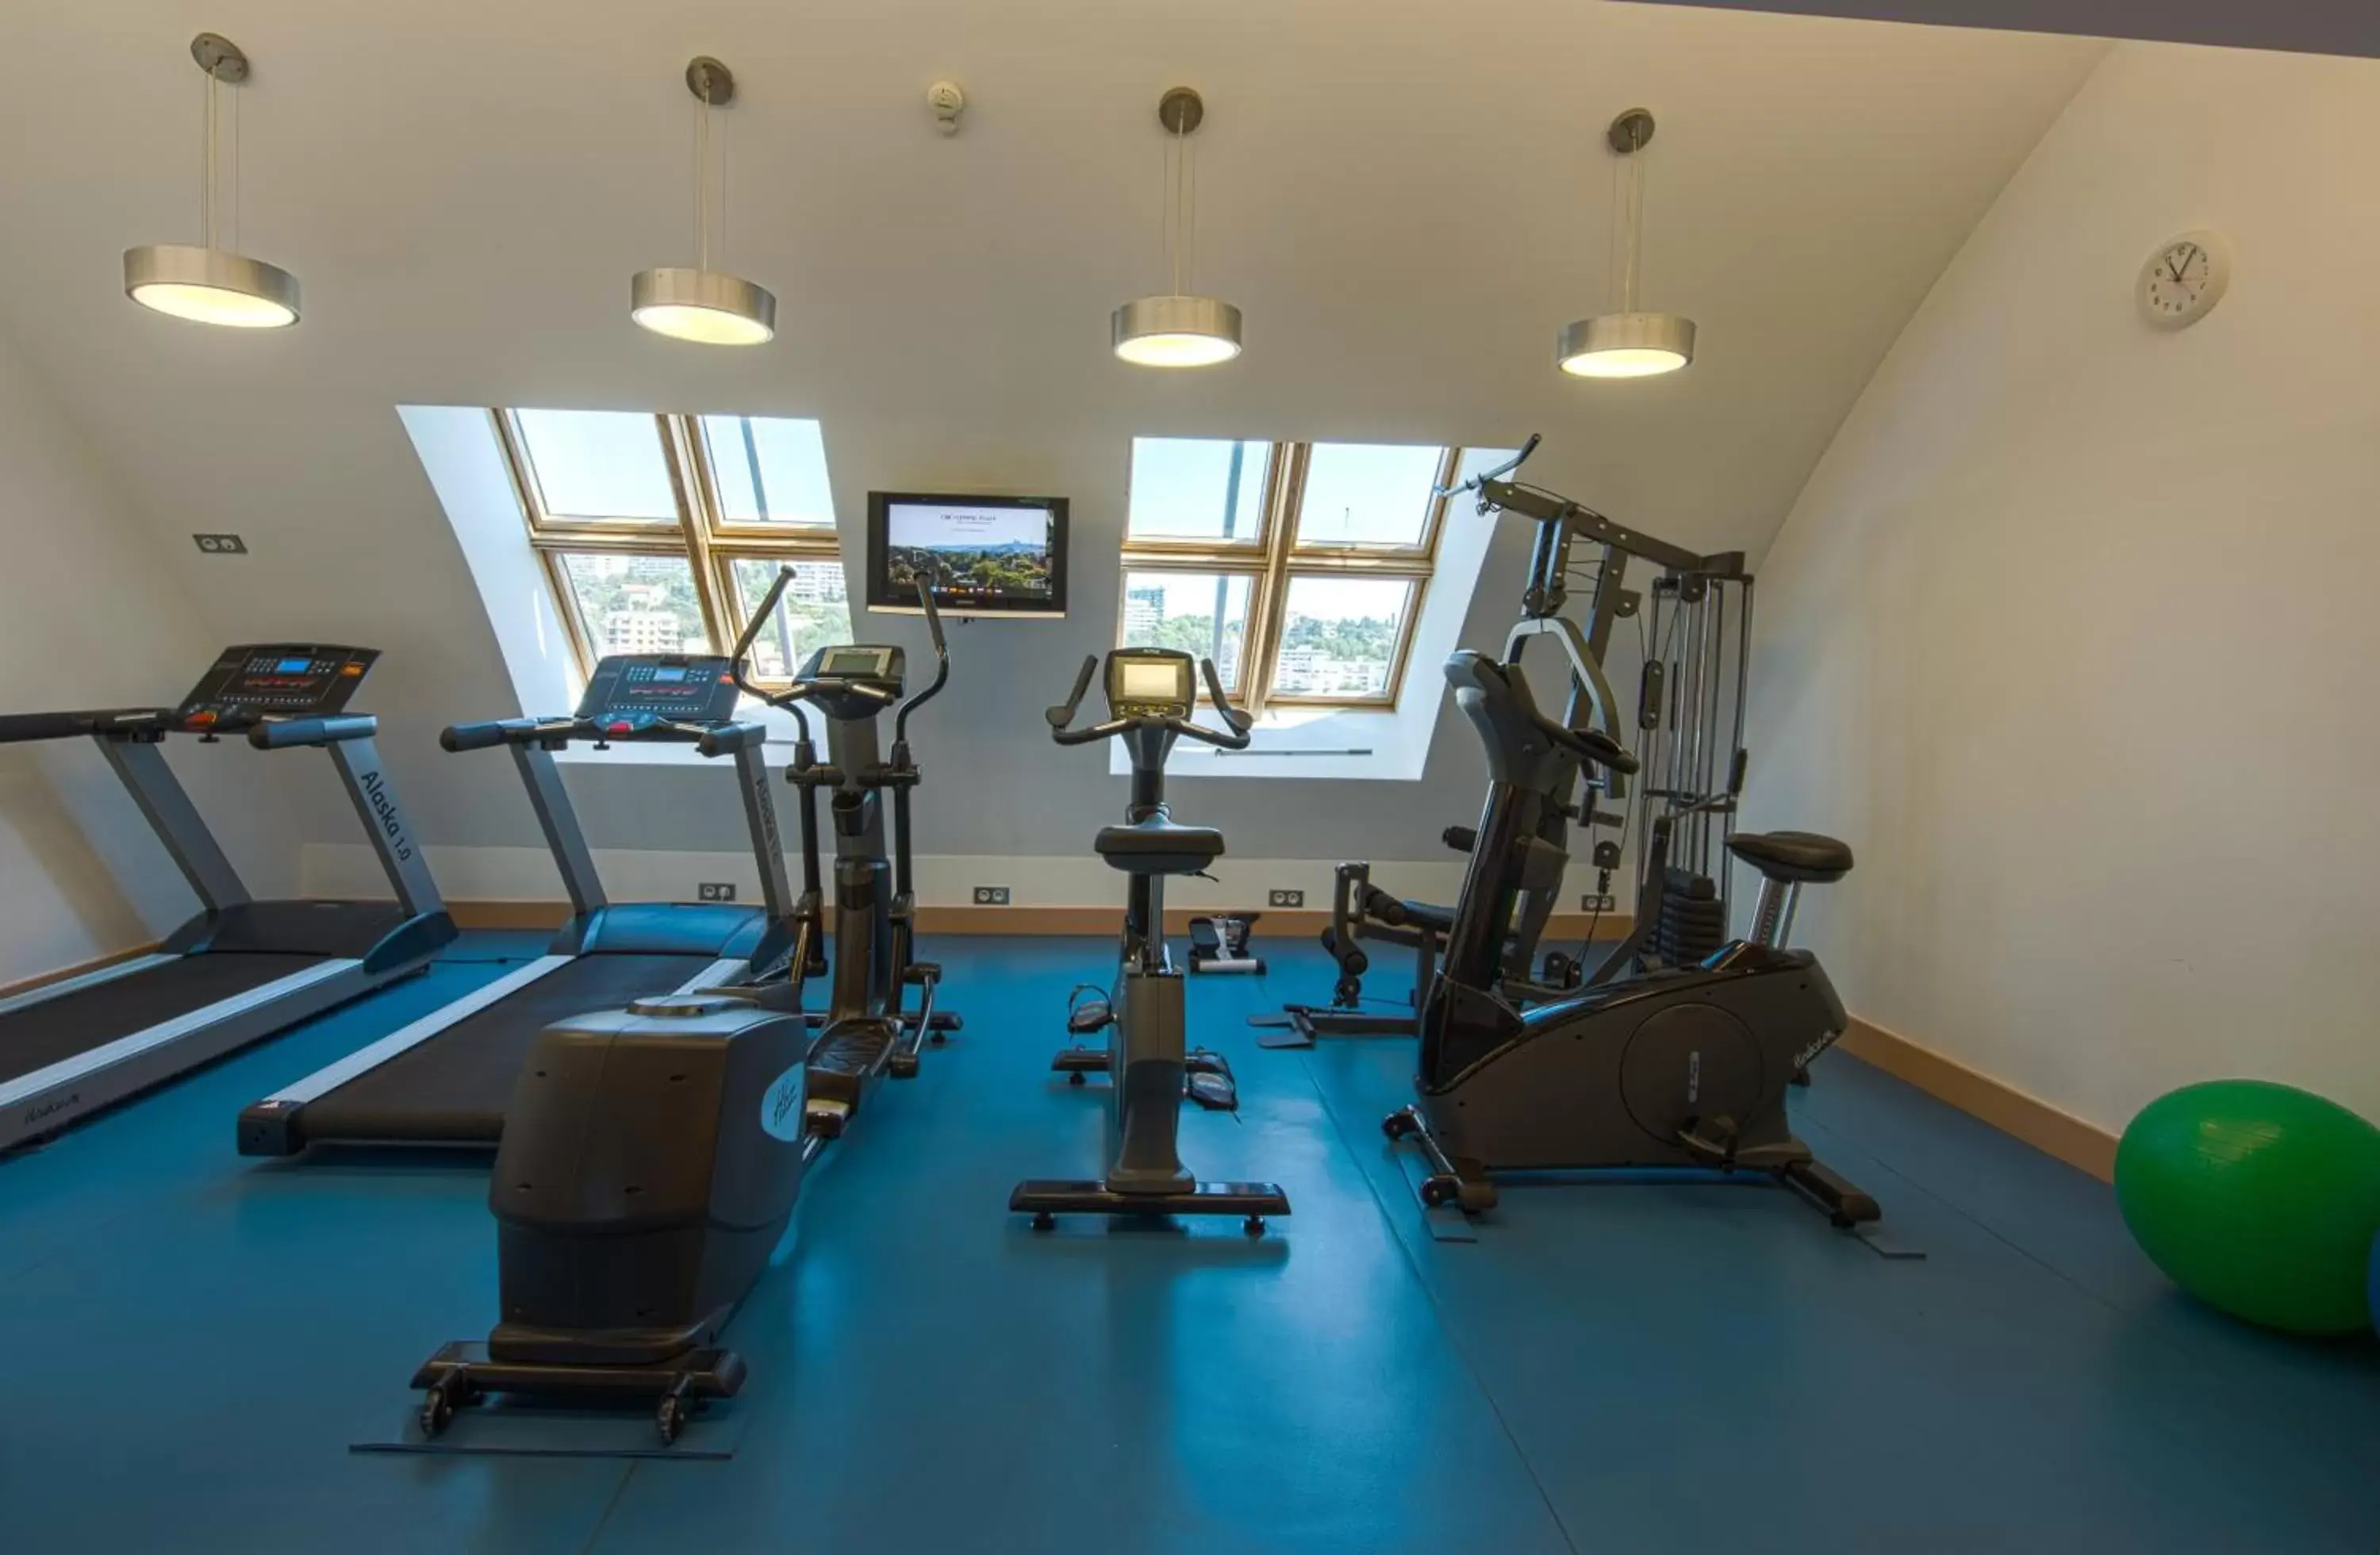 Fitness centre/facilities, Fitness Center/Facilities in Crowne Plaza Lyon Parc de la Tête d'Or